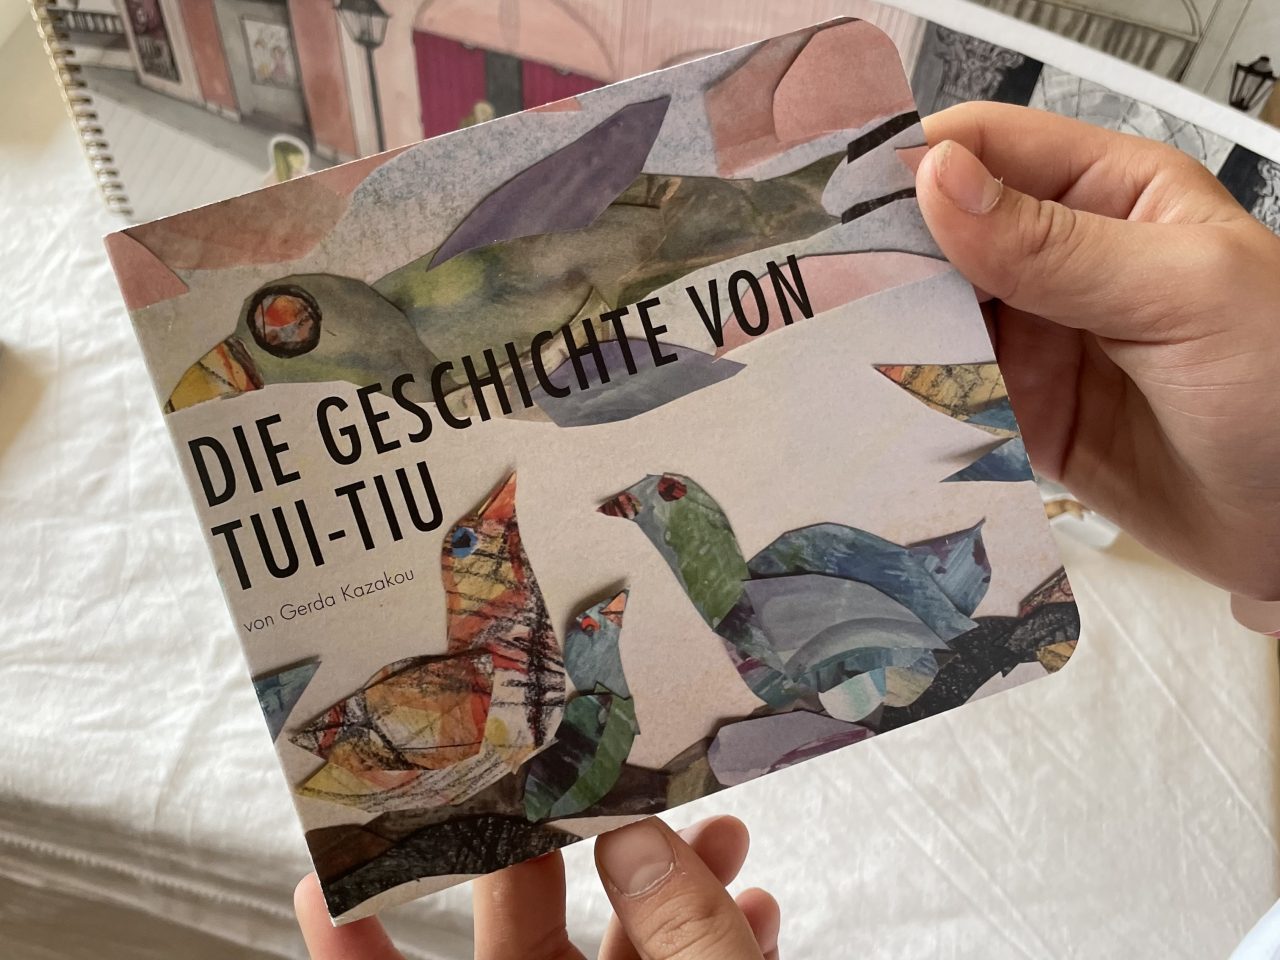 kunstvolles Kinderbuch "Die Geschichte von Tui-Tiu" in den Händen gehalten